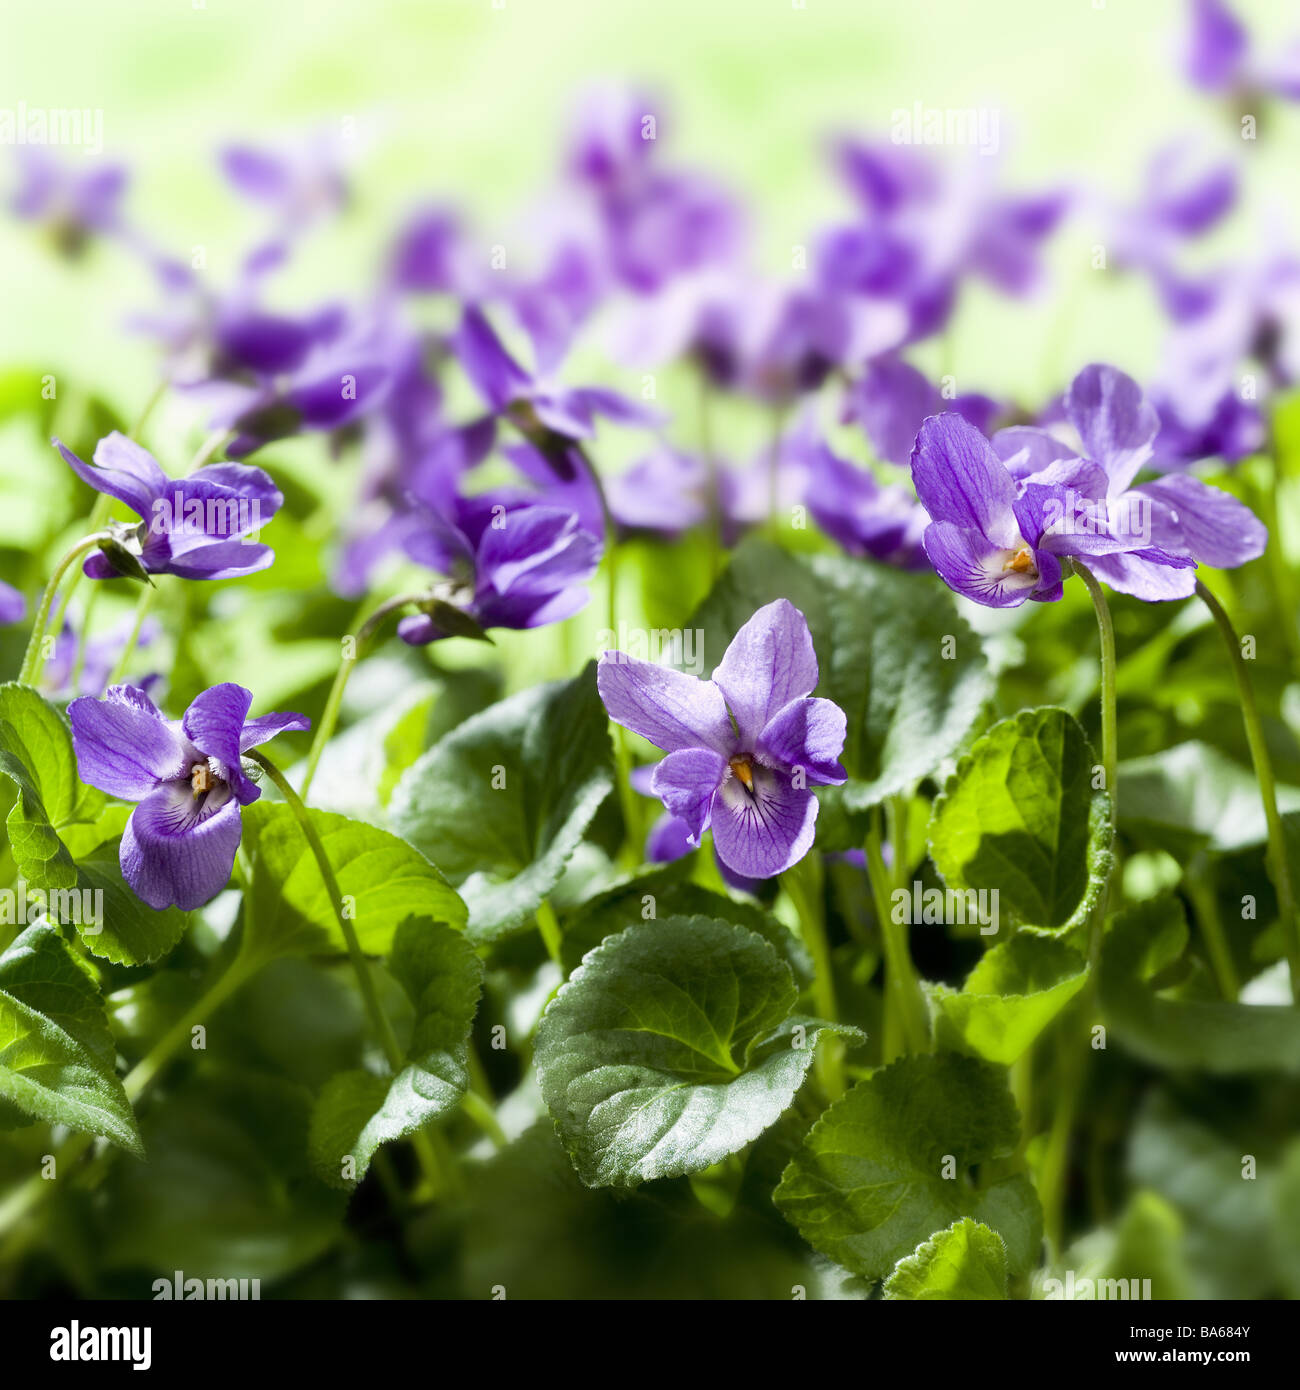 4 Servietten ~ Bellina cream Streublümchen Blumen lila violett Blüten Veilchen